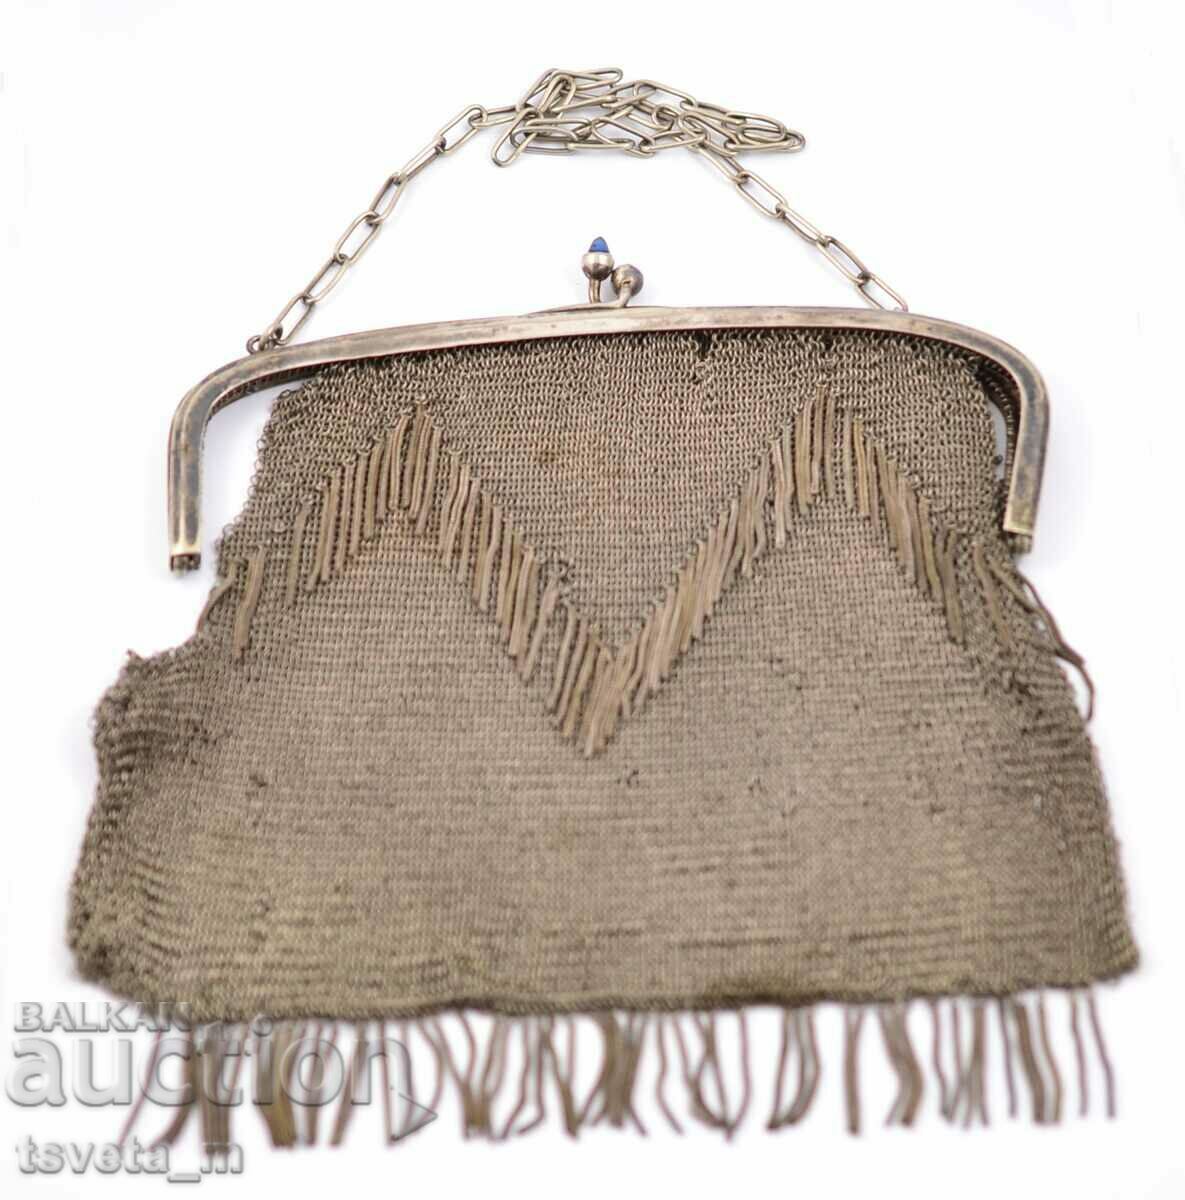 Vintage ladies metal purse.